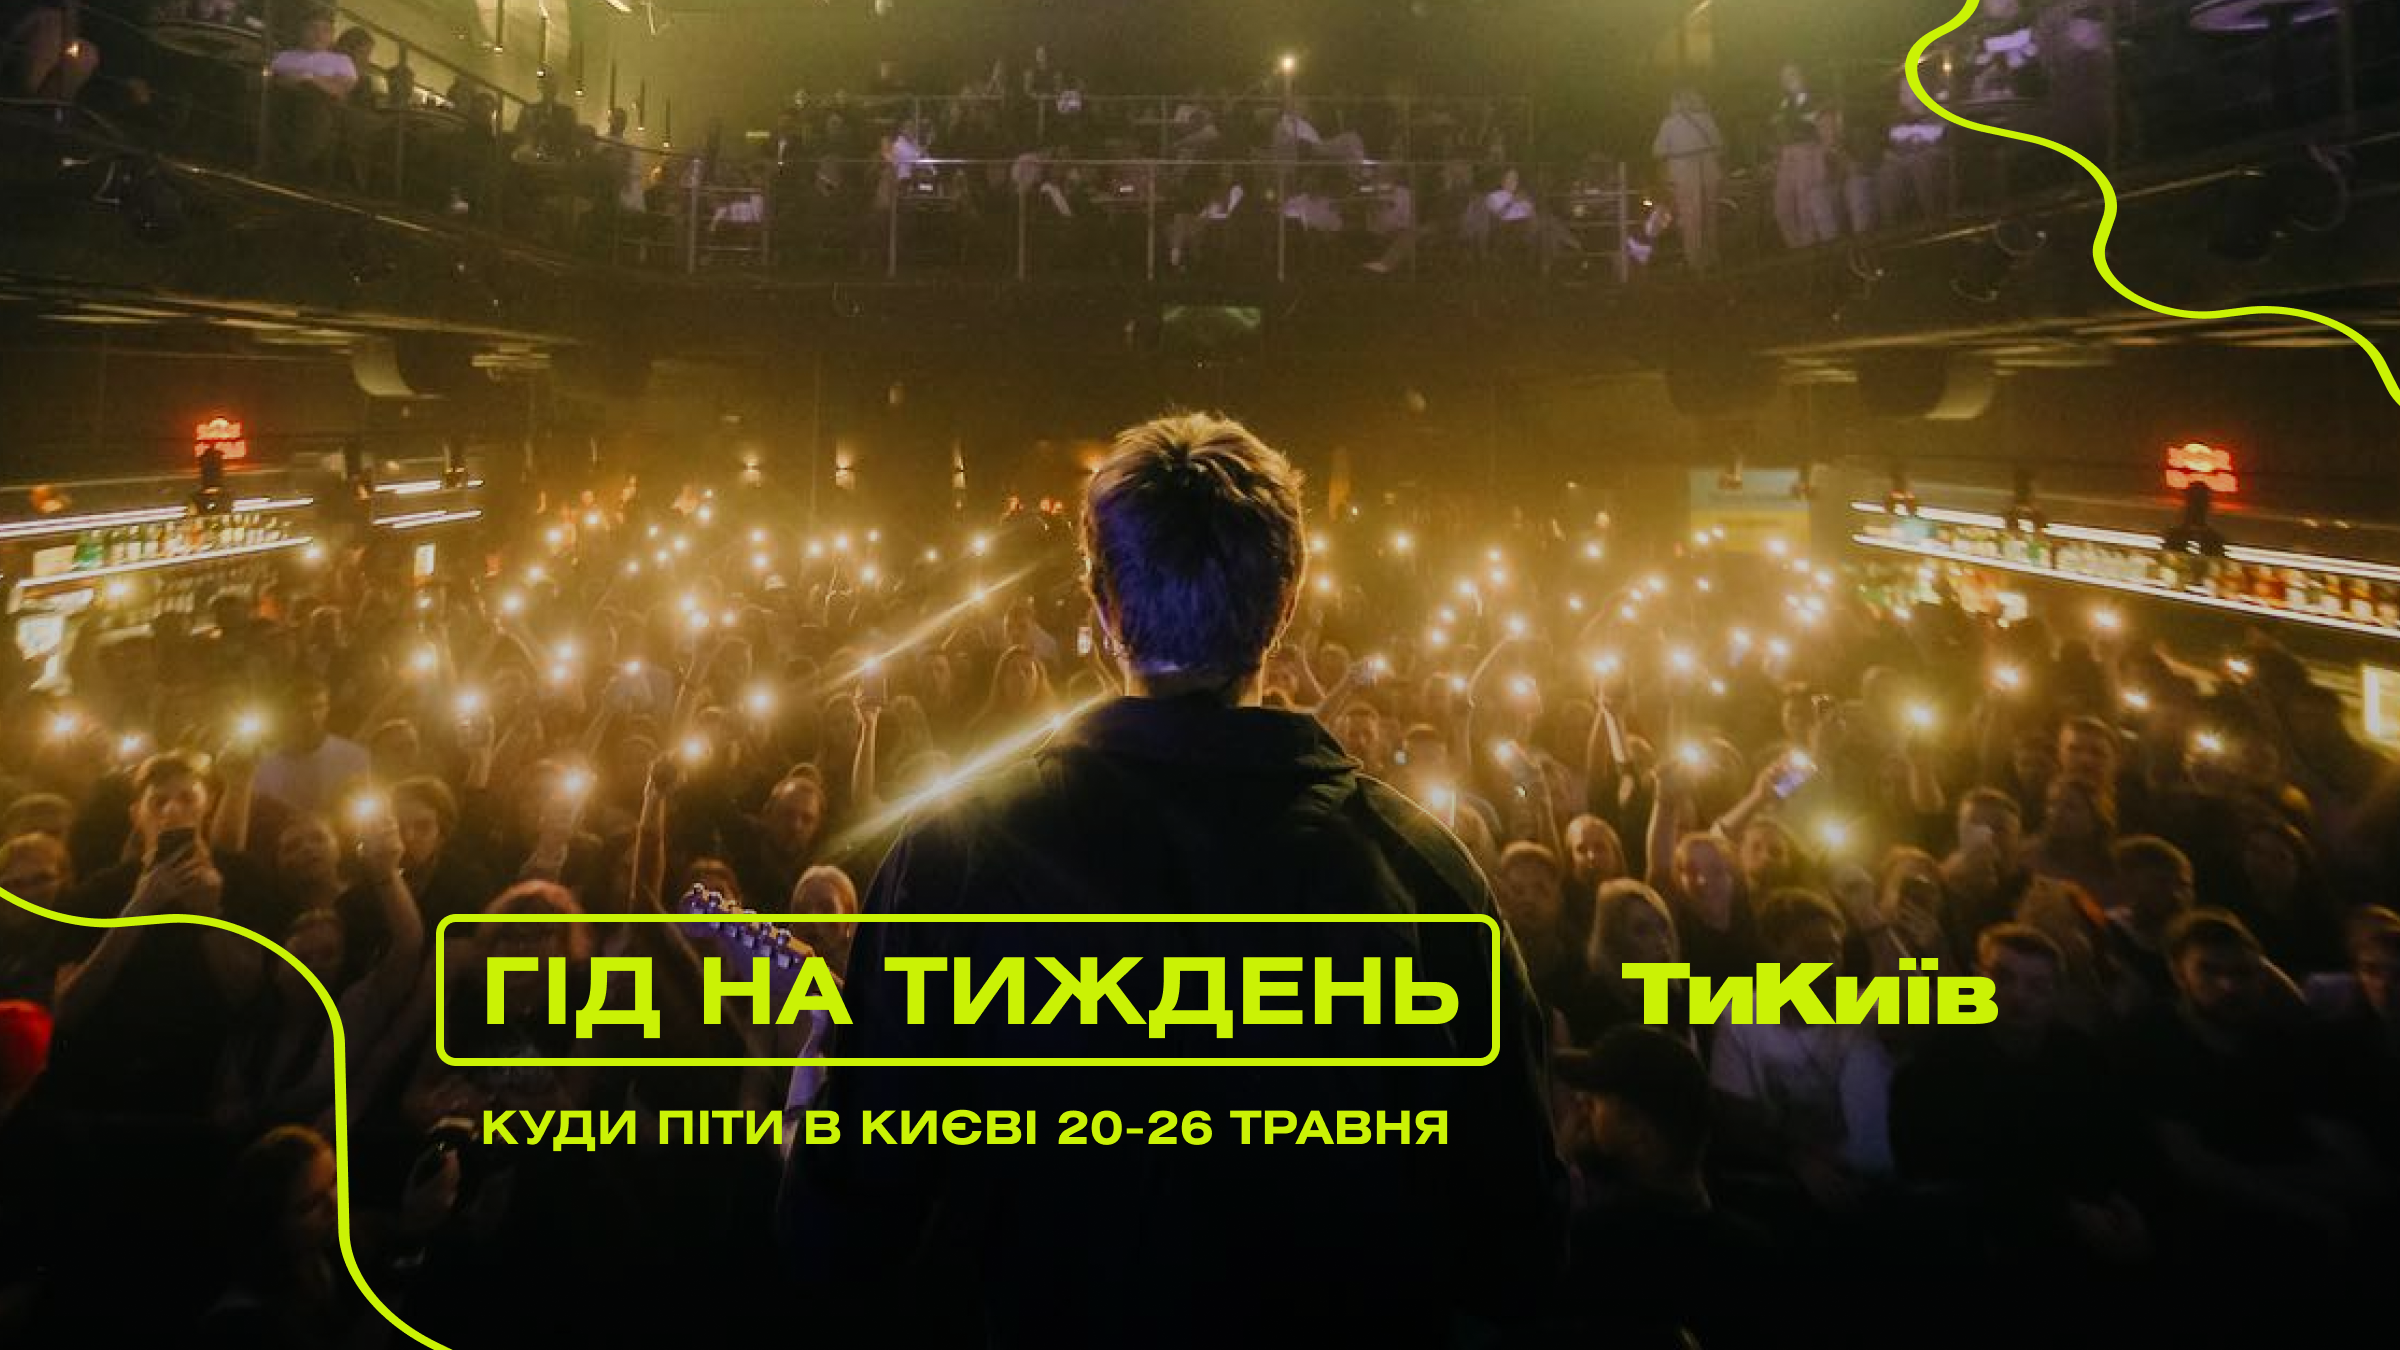 Гід на тиждень: куди піти в Києві 20-26 травня